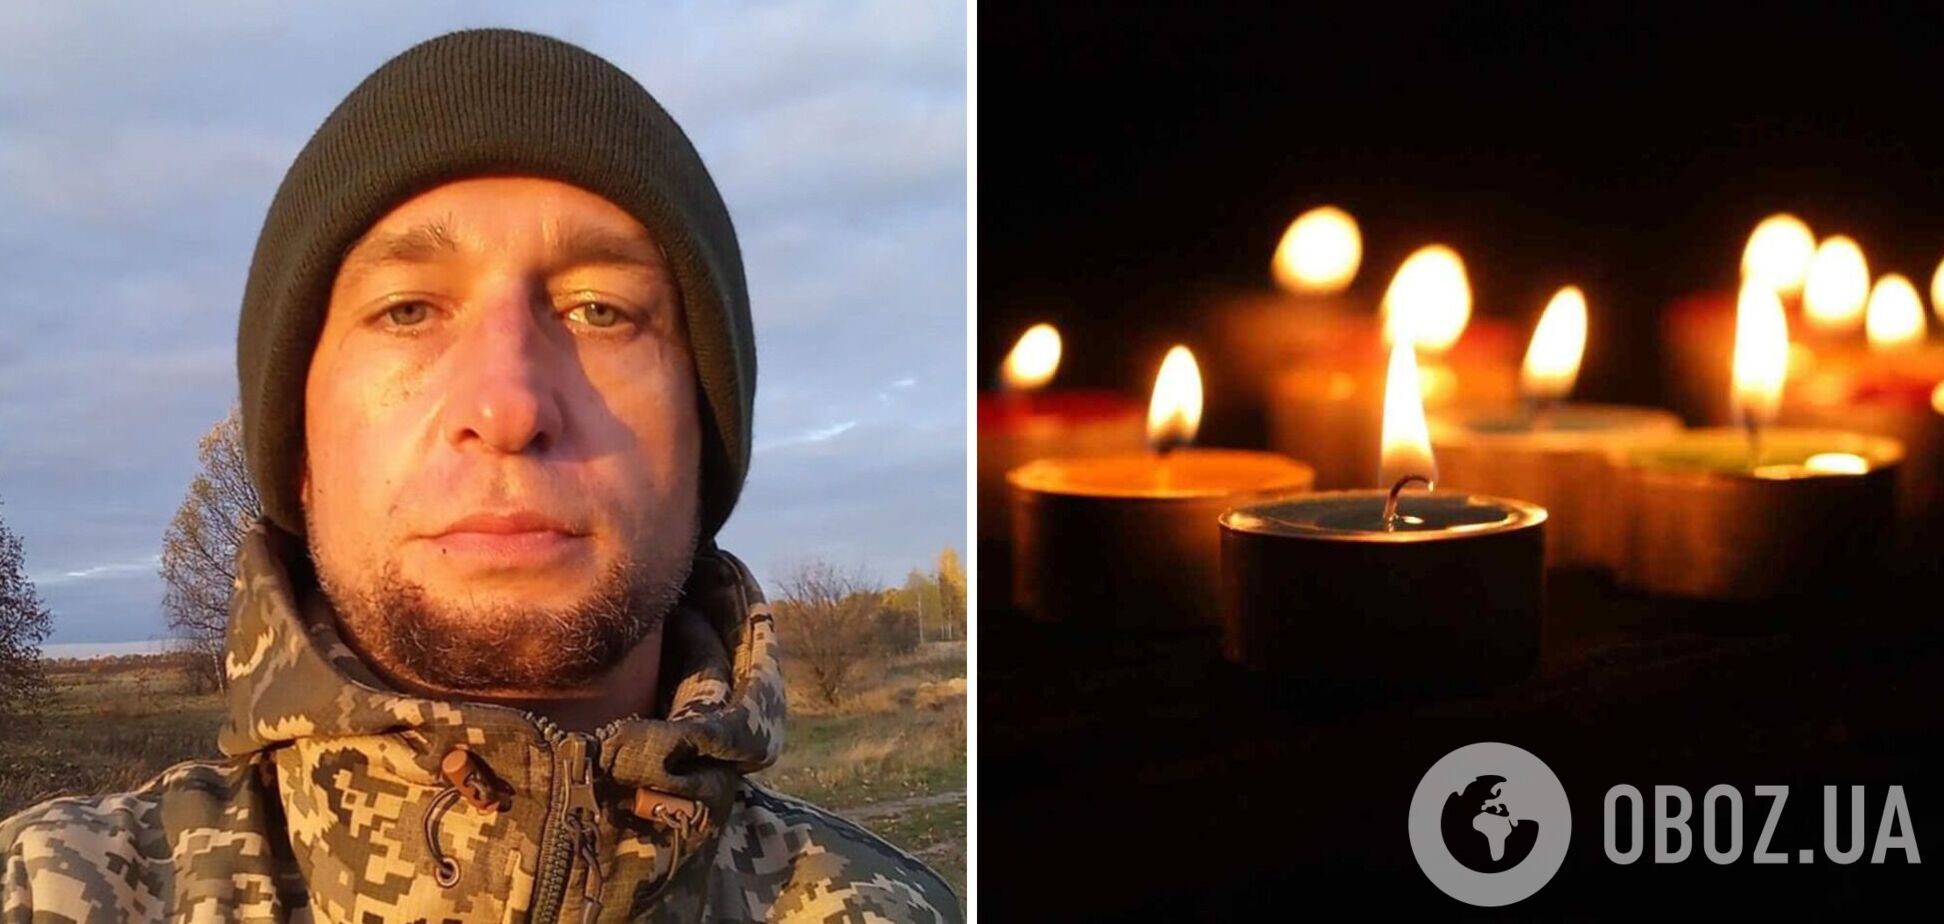 Пішов добровольцем: захисник із Чернігівщини героїчно загинув на Донбасі
